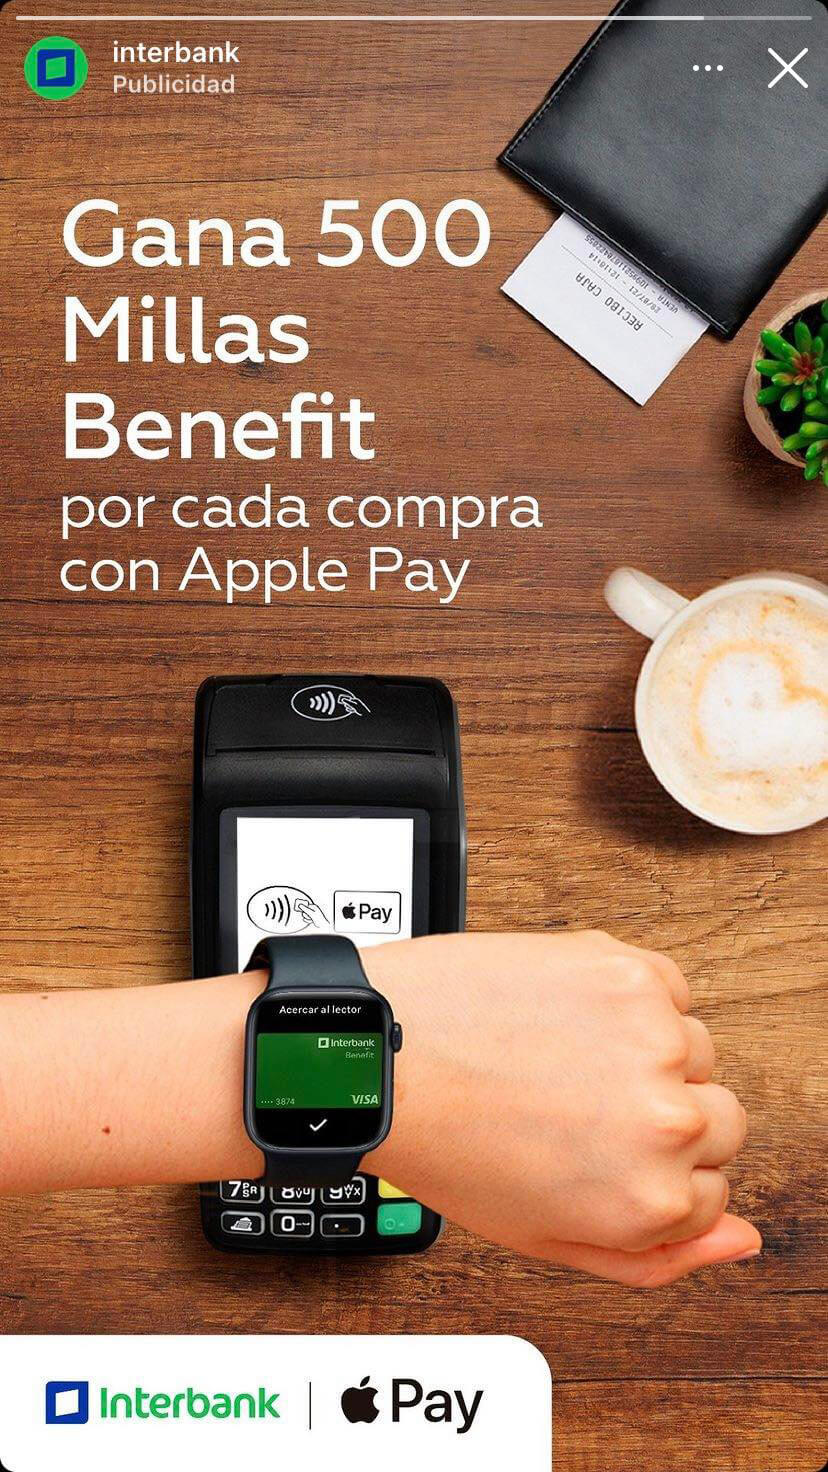 anuncio publicitario de interbank ofreciendo 500 millas por usar apple pay en peru